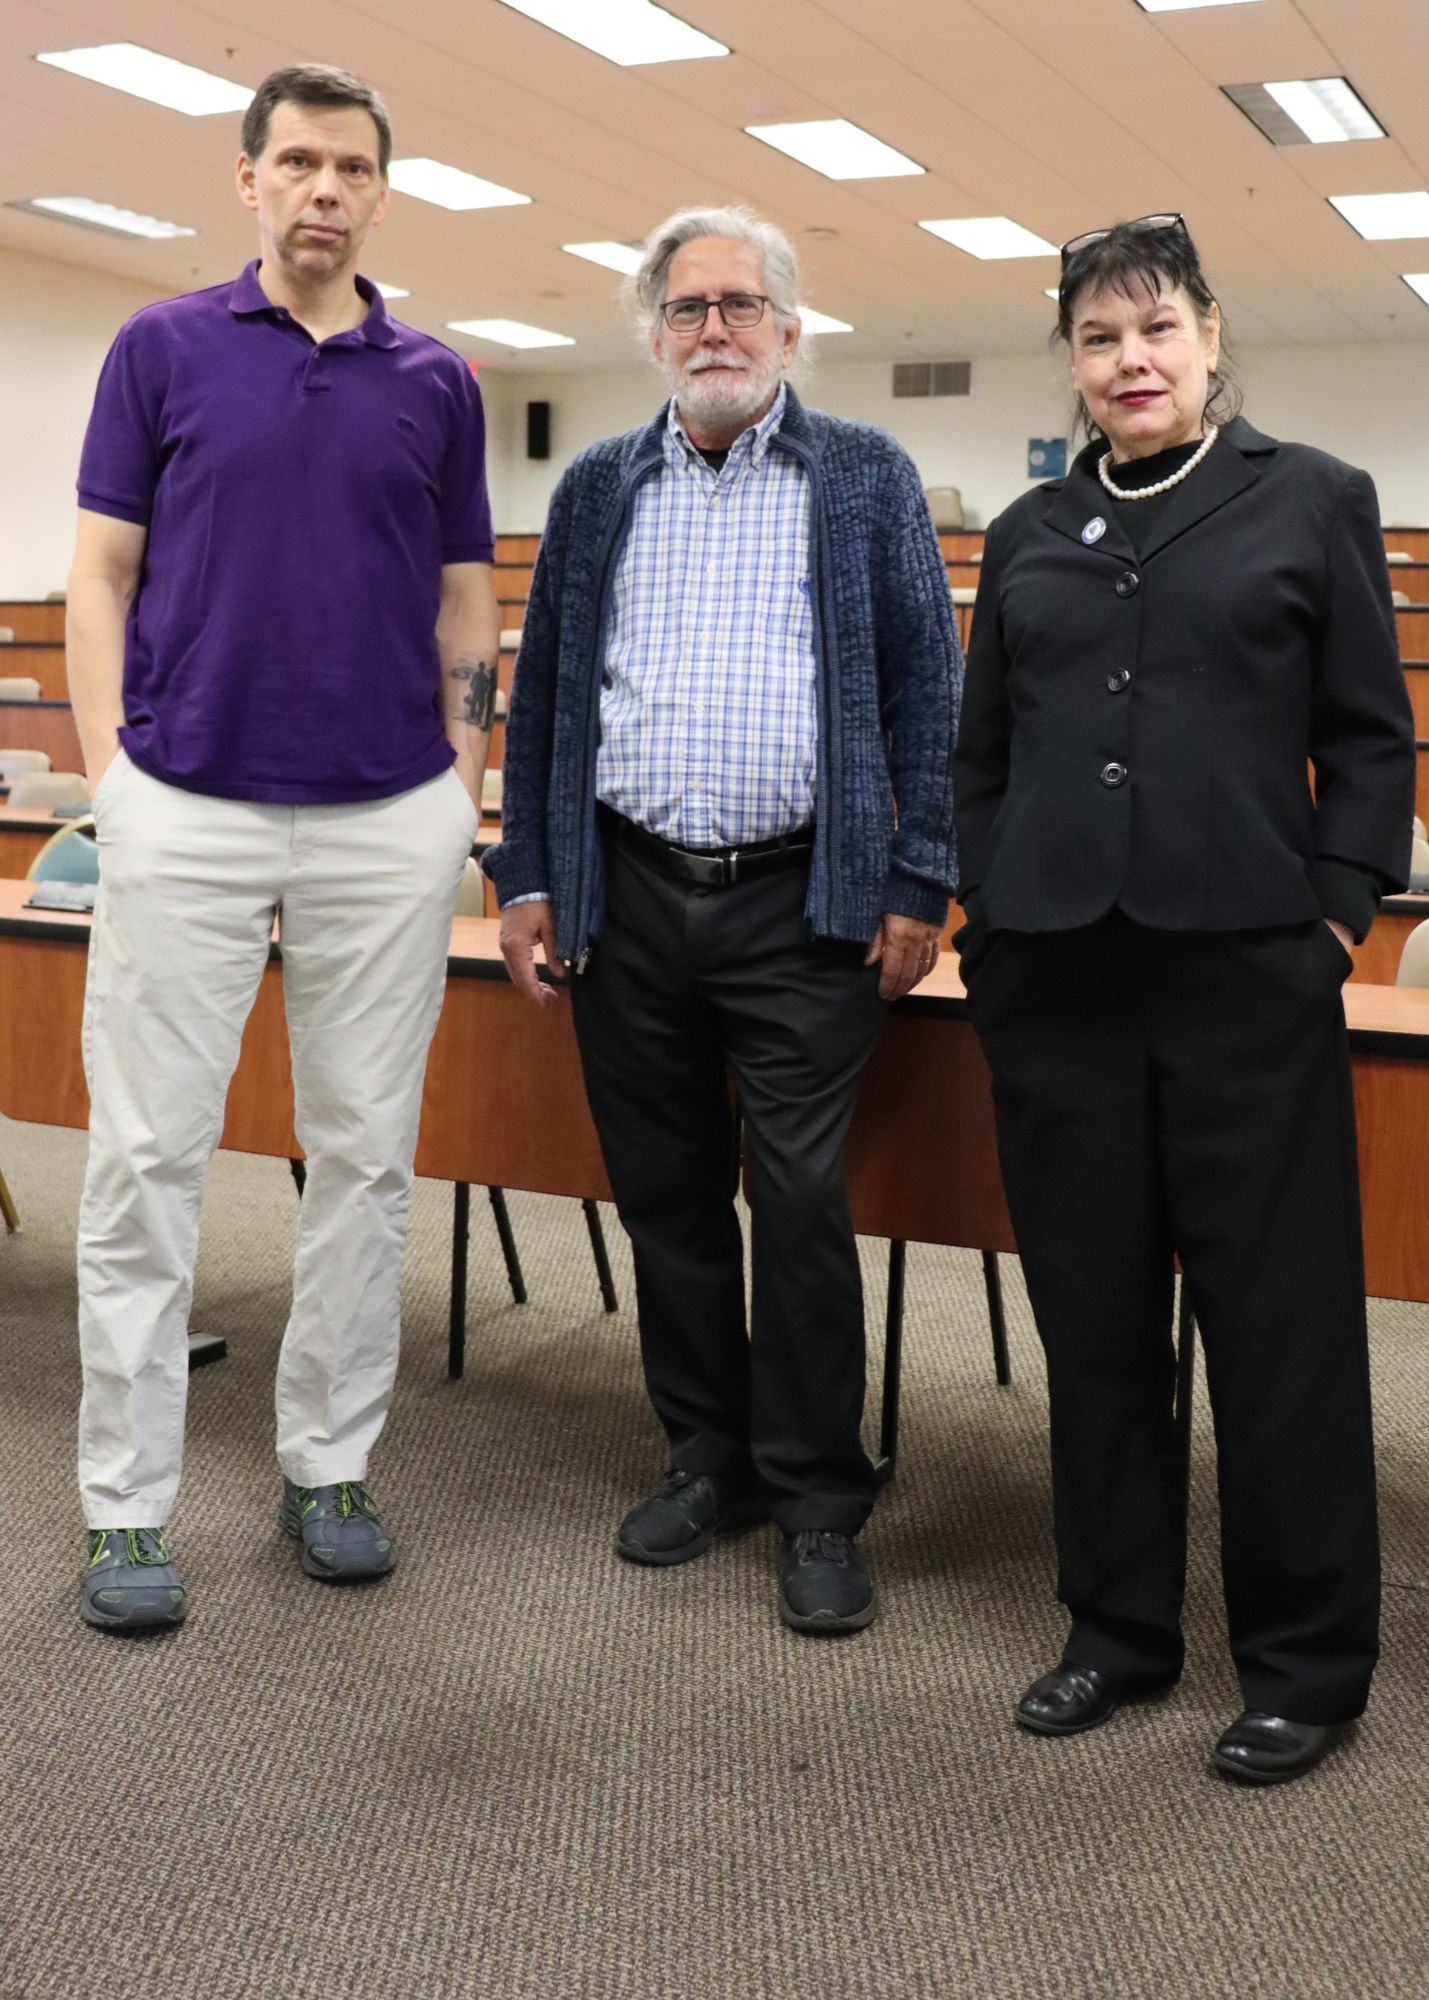 SGSC’s Dr. Holiwski, Dr. Potter and Dr. Guedes